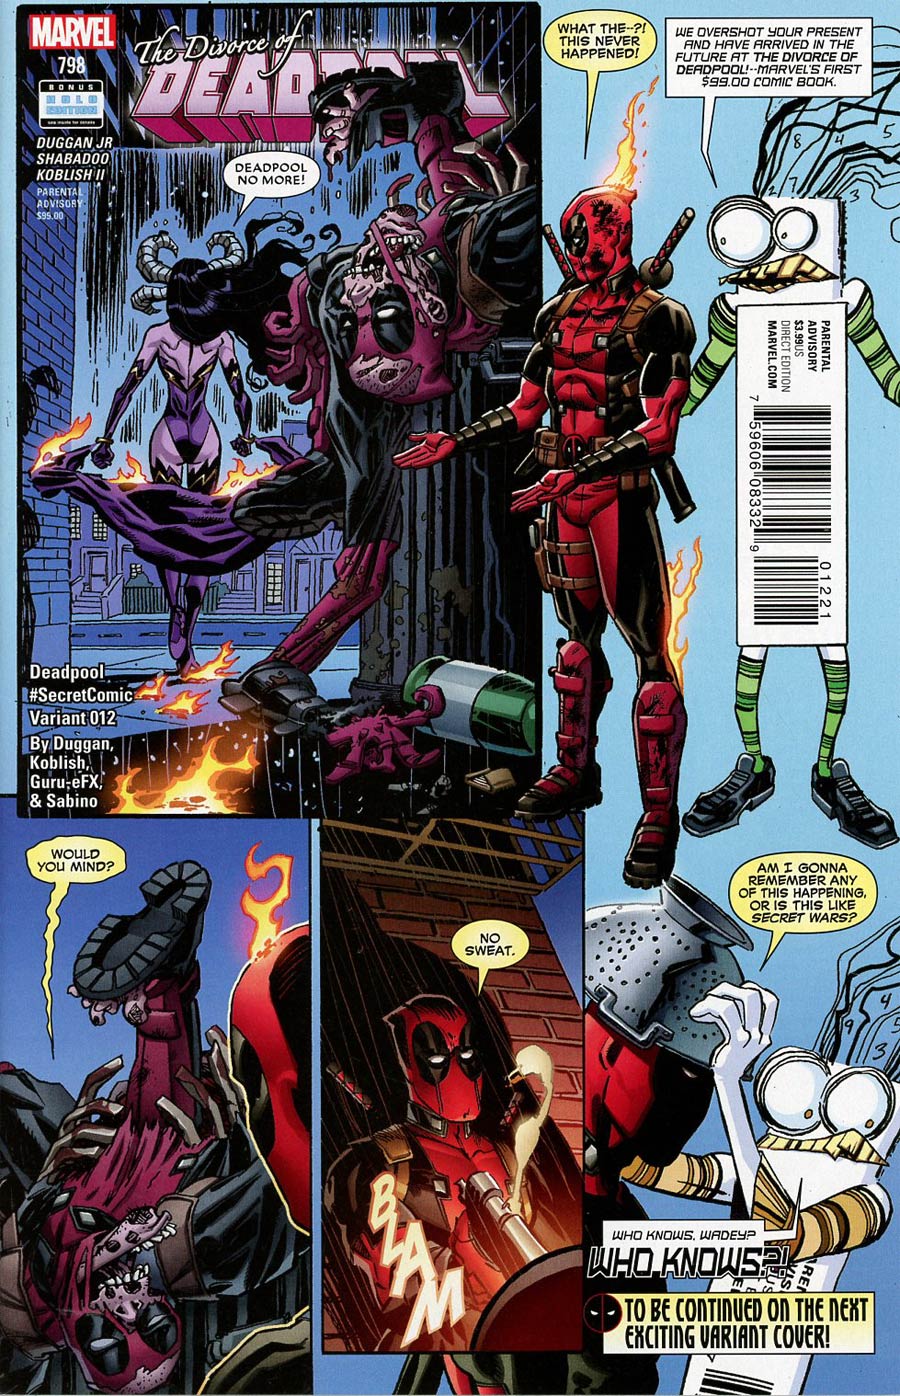 Deadpool Vol 5 #12 Cover B Variant Scott Koblish Secret Comic Cover